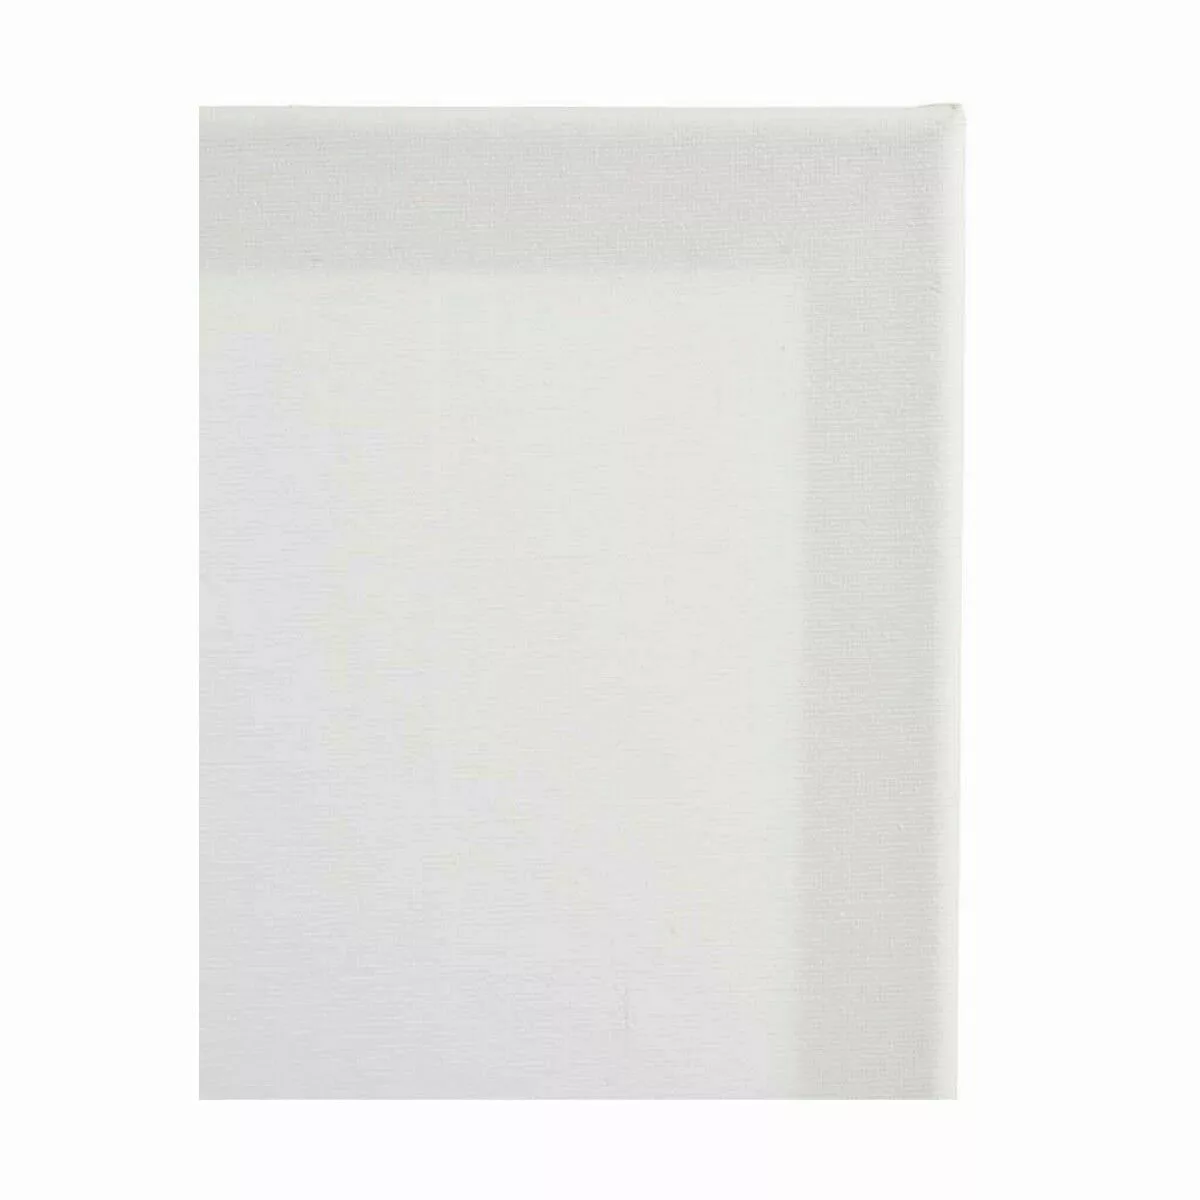 Leinwand Weiß (1,5 X 60 X 45 Cm) (10 Stück) günstig online kaufen